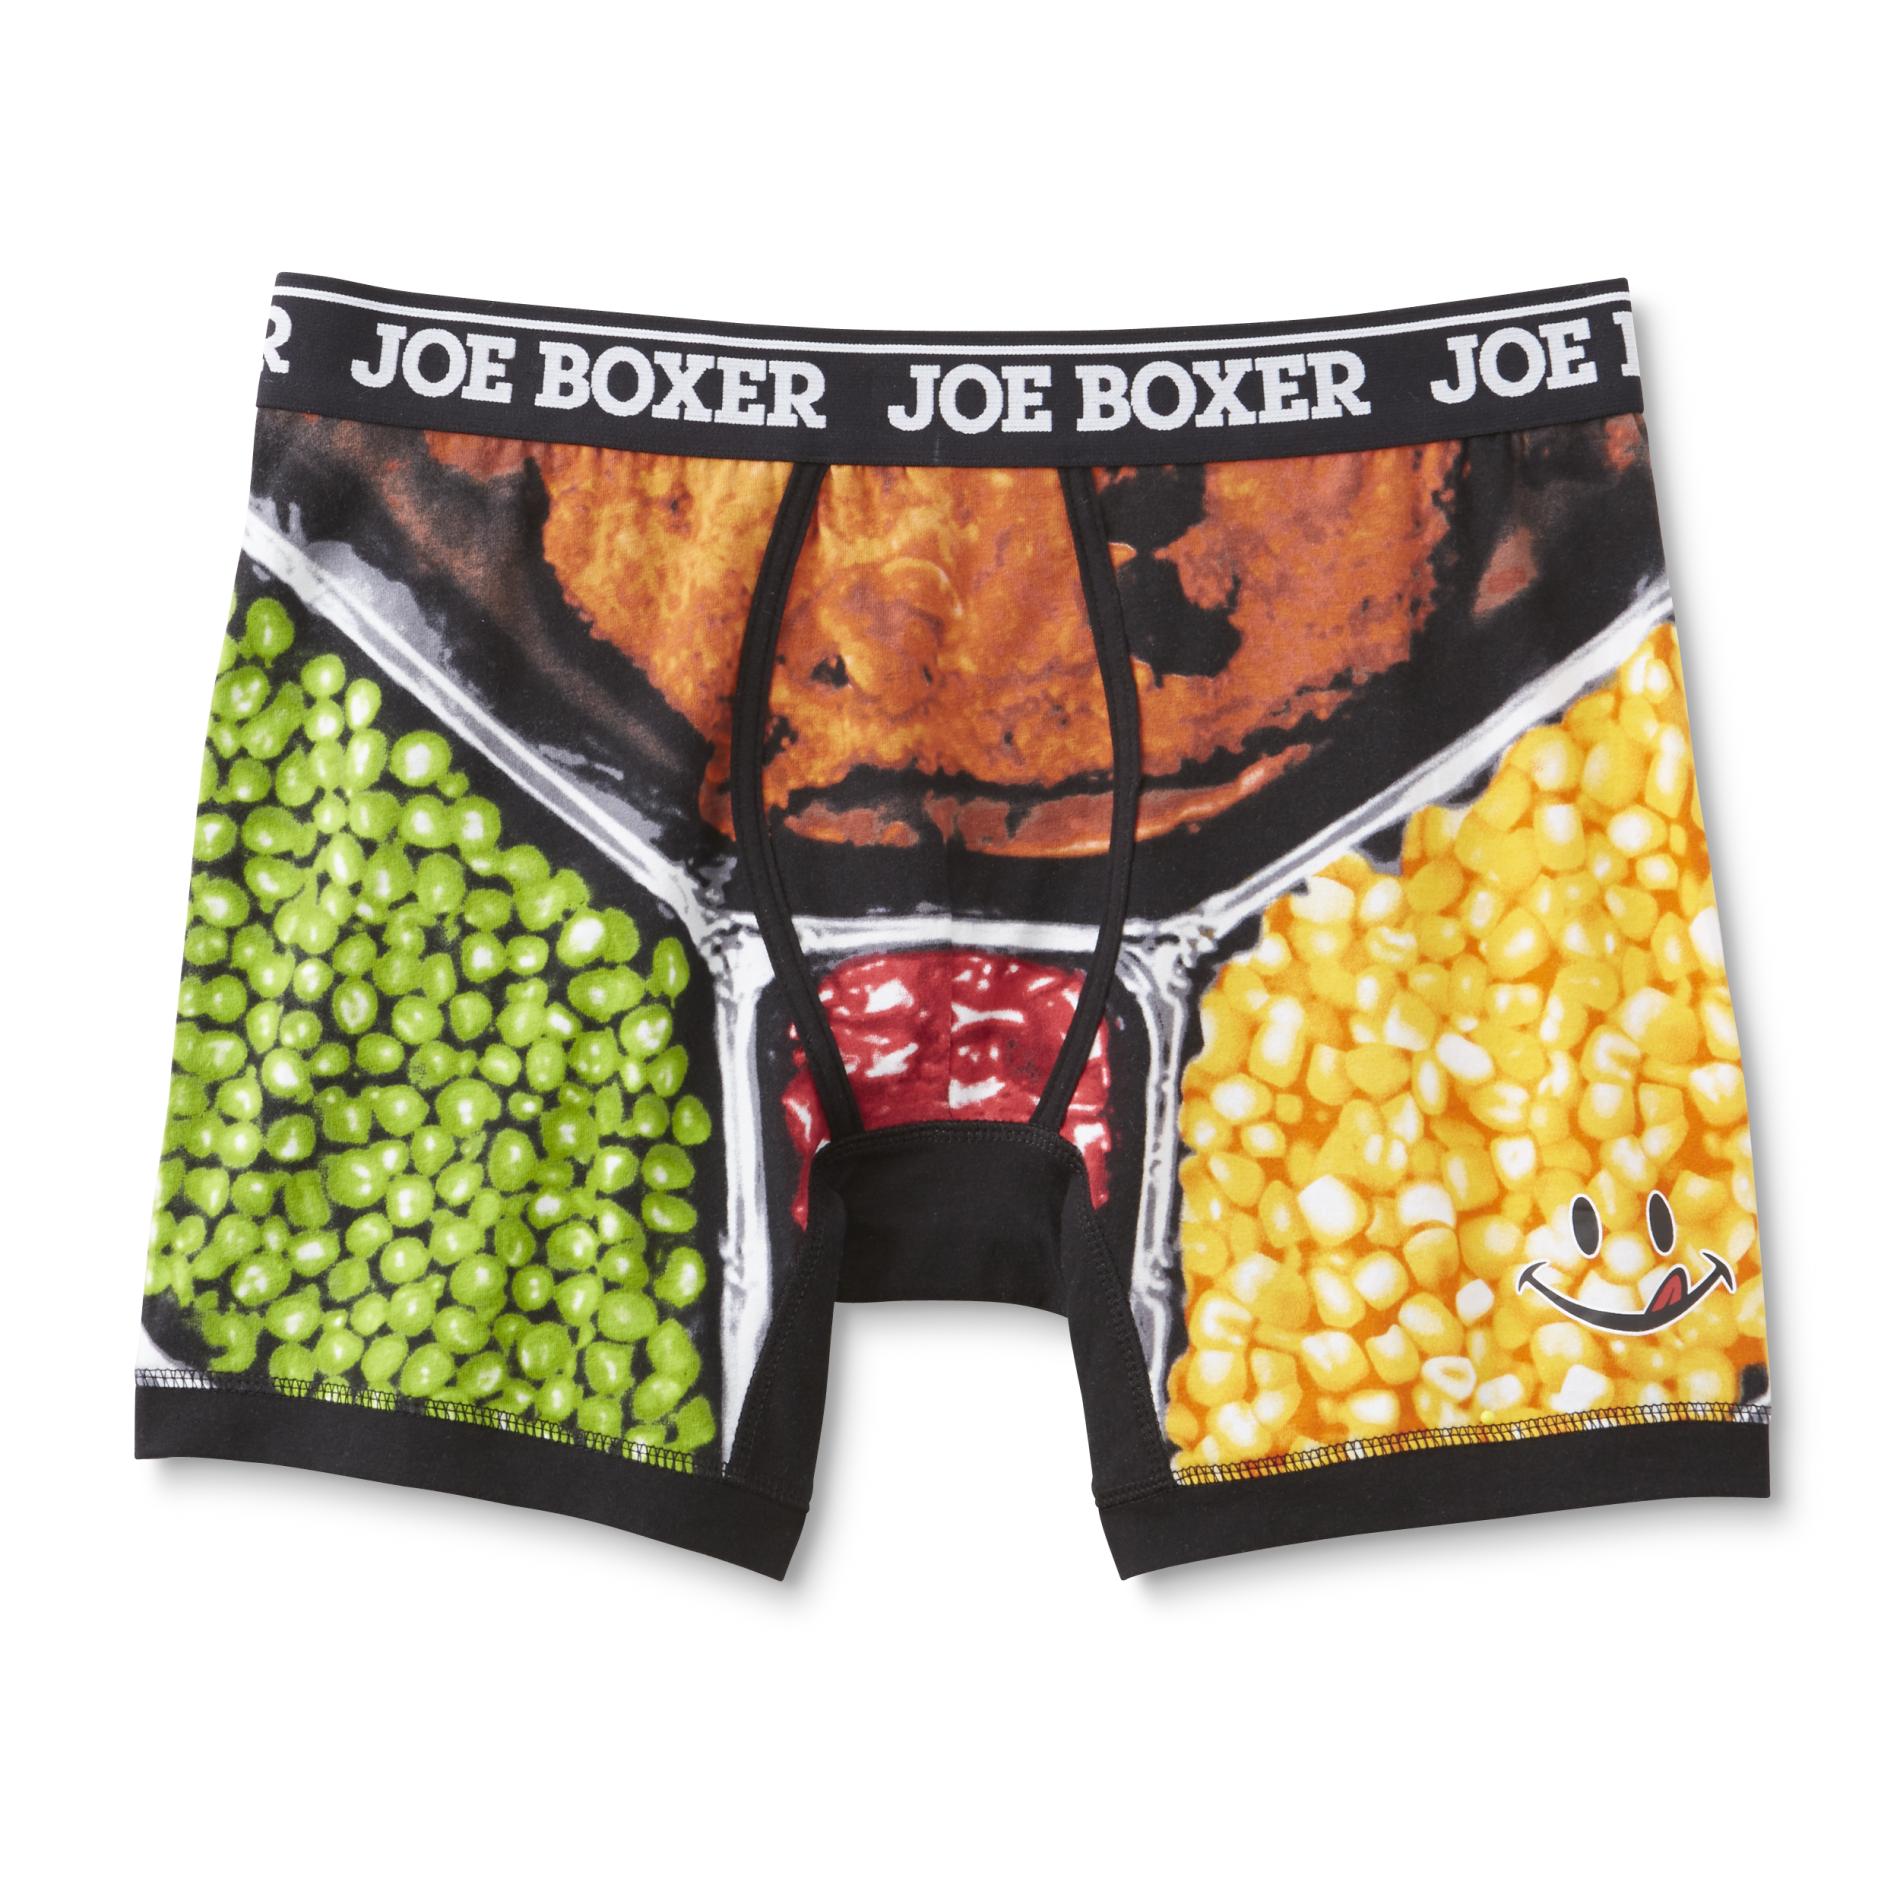 Joe Boxer Men's Boxer Briefs - TV Dinner